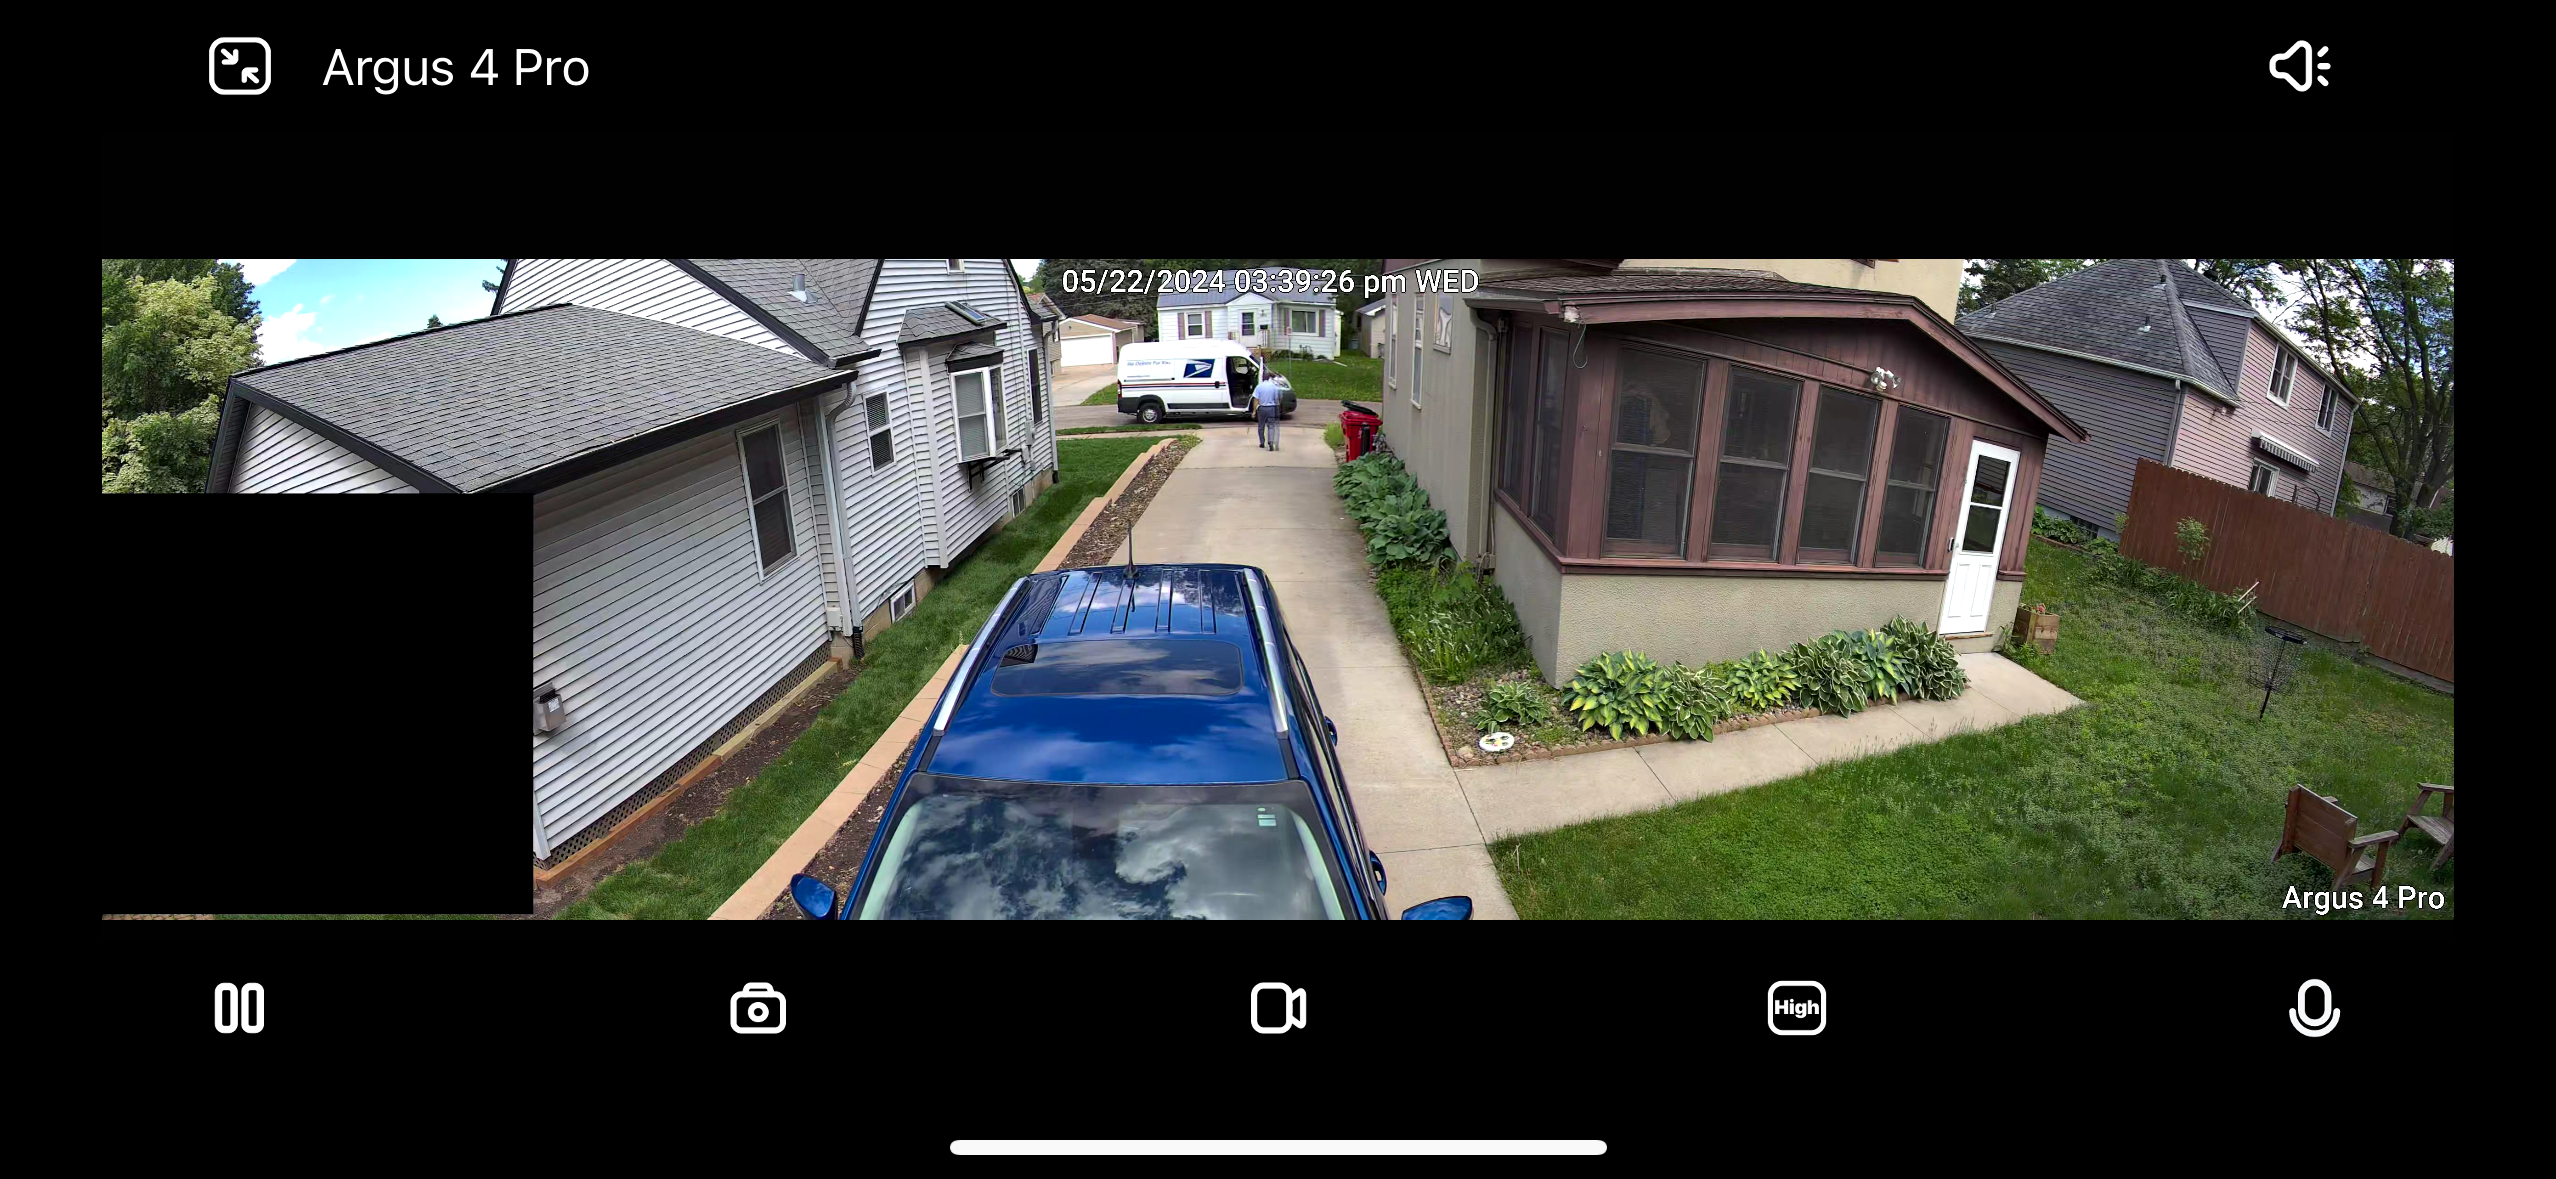 Captura de tela da visualização da câmera Reolink Argus 4 Pro, mostrando a casa e o carro azul